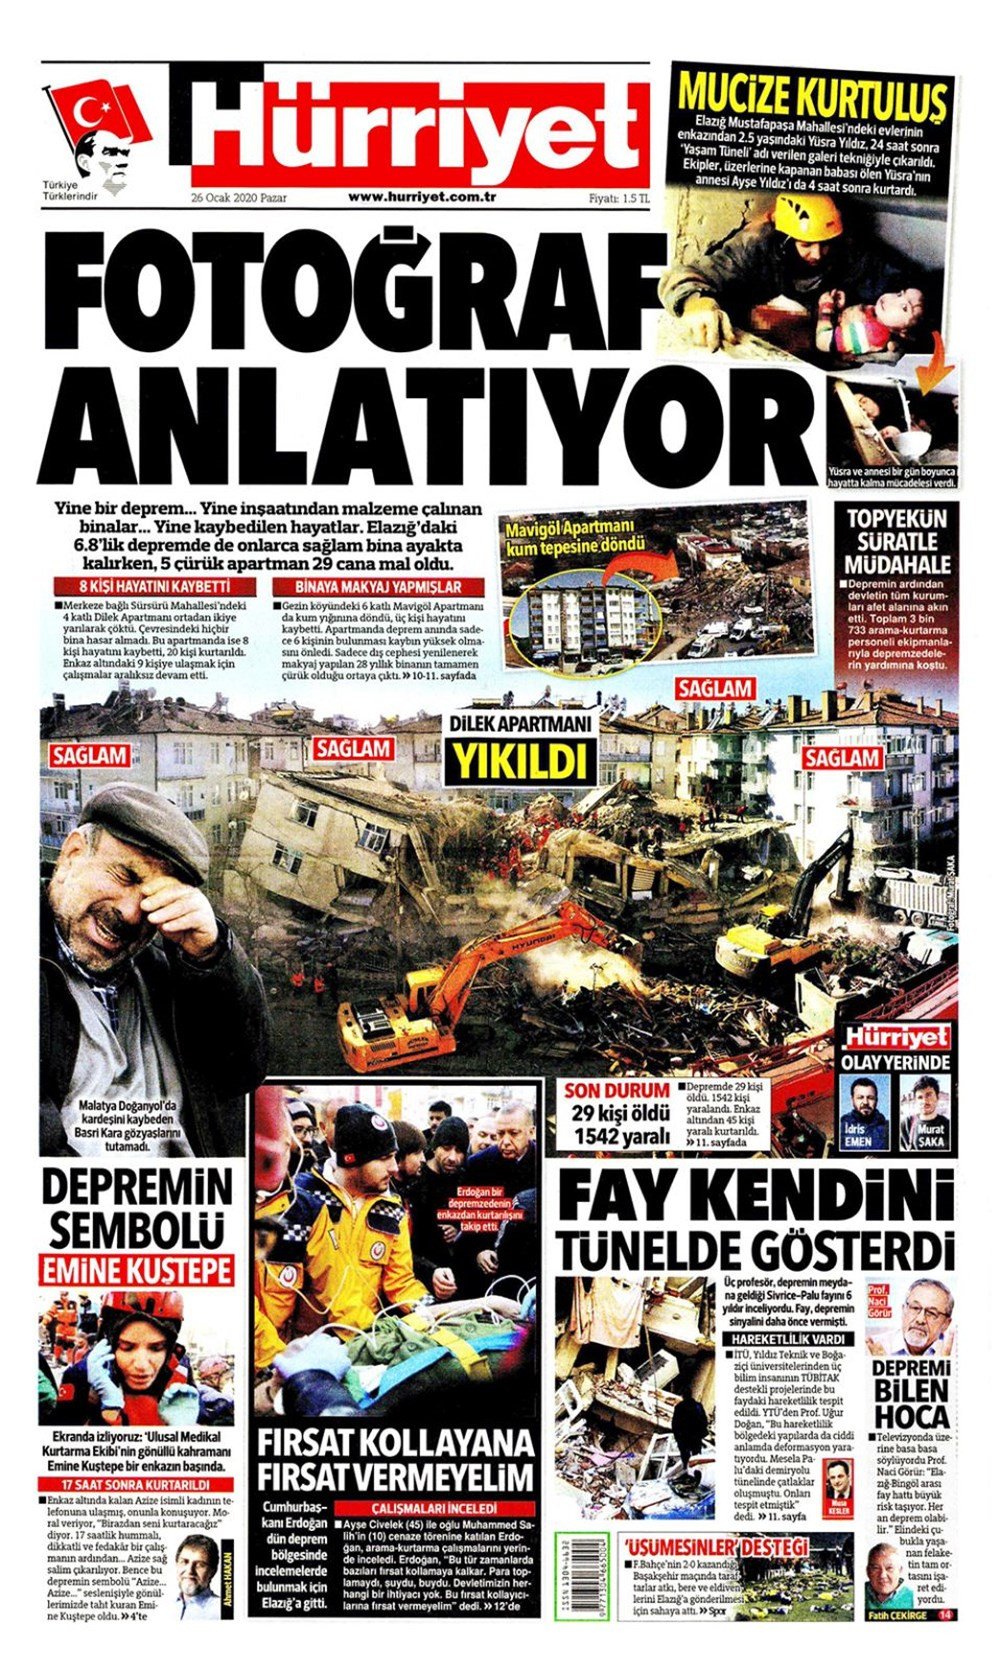 Elazığ depremi gazete manşetlerinde! 26 Ocak 2020 gazete manşetleri - Resim: 3